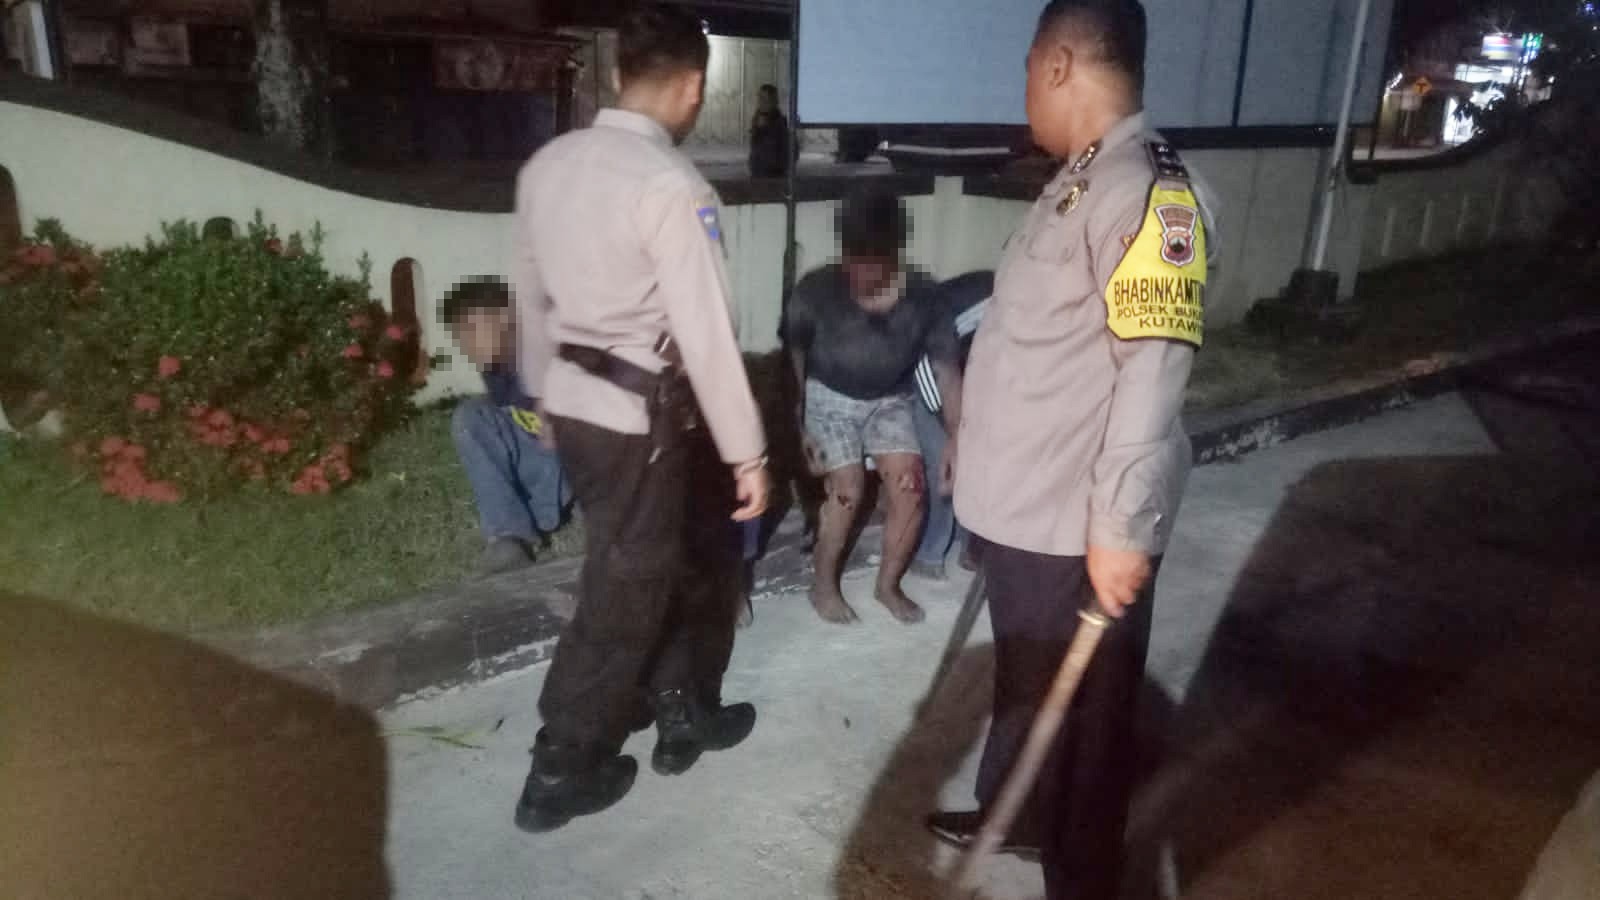 Hendak Tawuran, Delapan Remaja Ditangkap Polisi di Bukateja